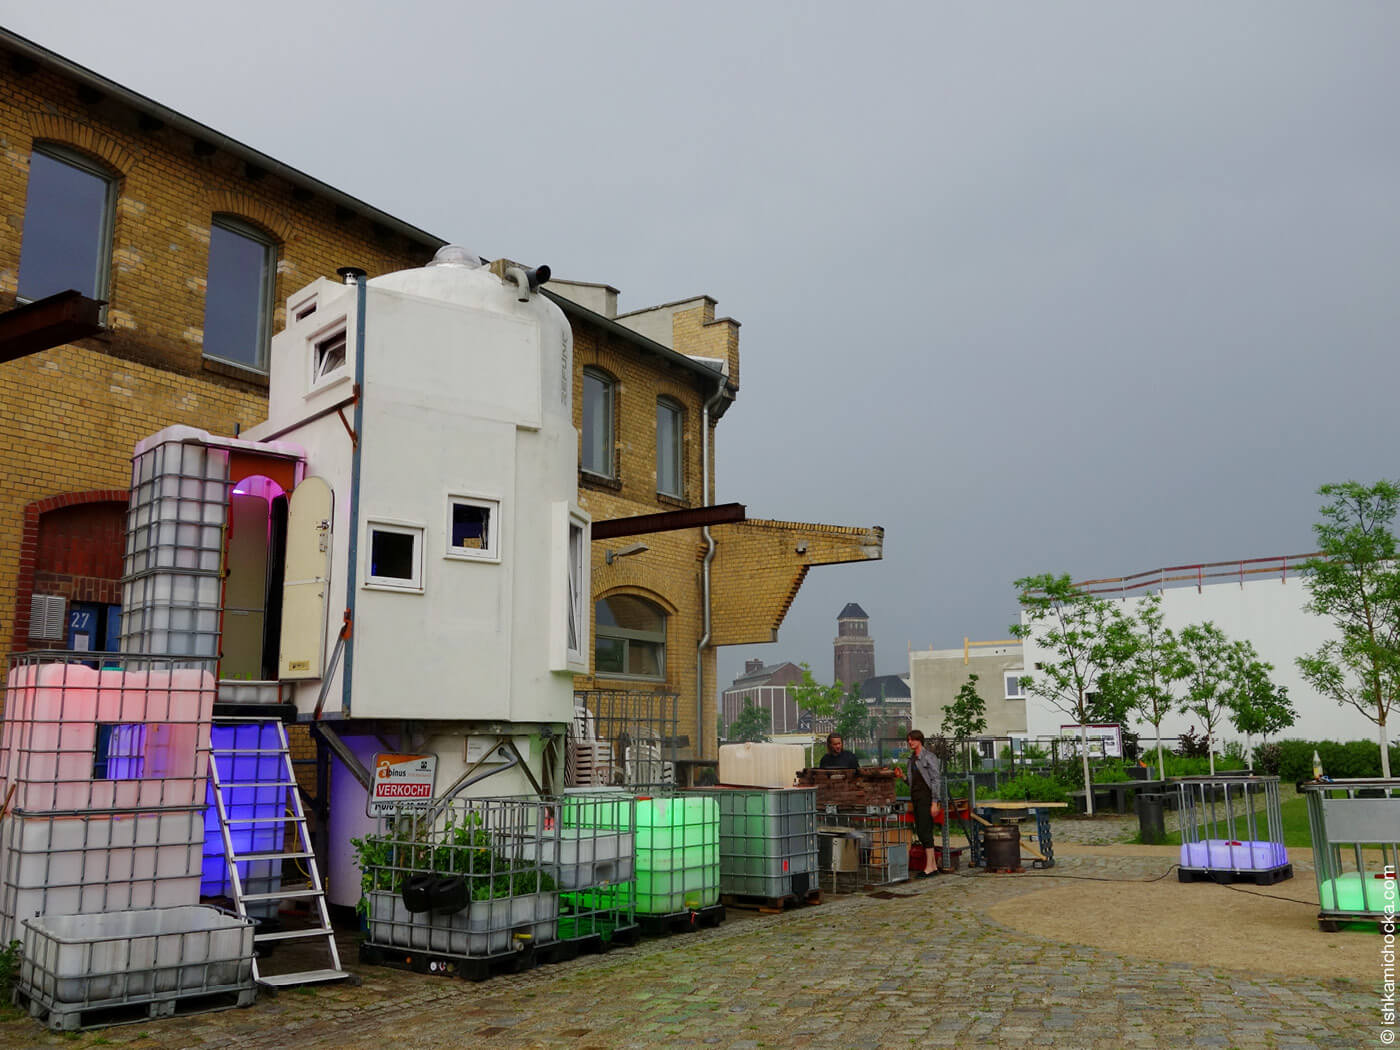 Zur Wohnung umgebautes Silo von Refunc in Berlin-Moabit